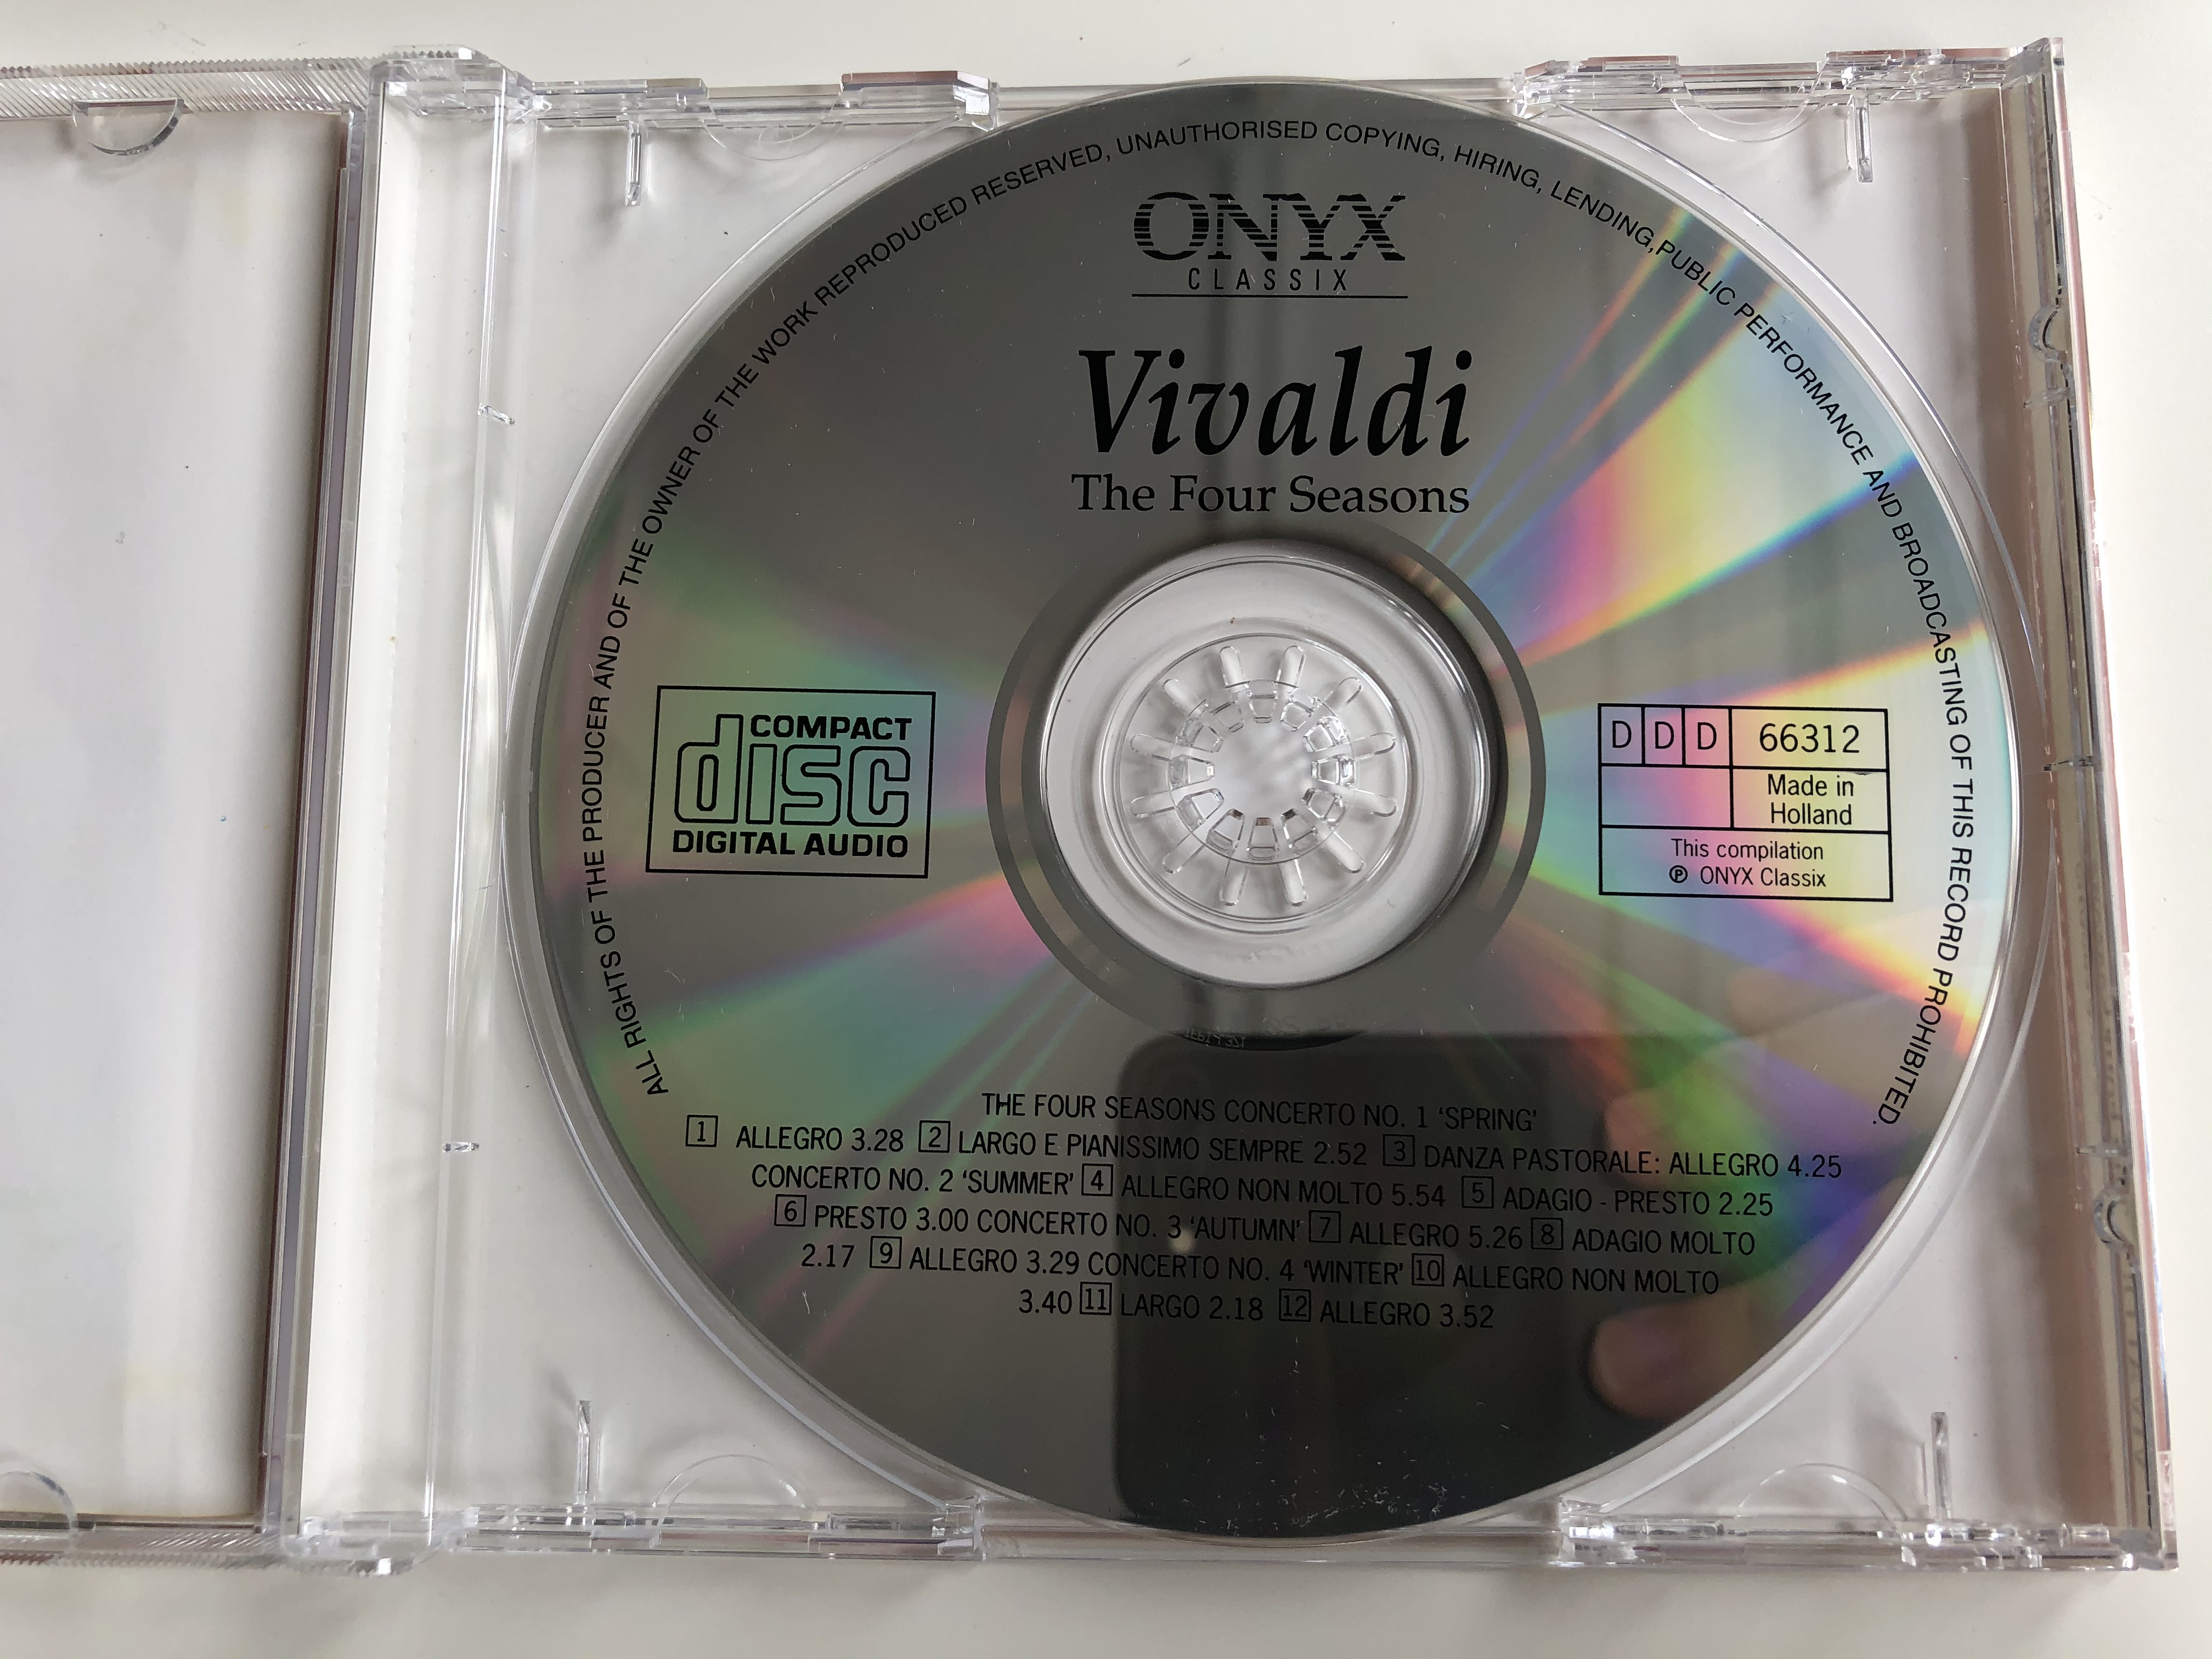 vivaldi-the-four-seasons-musici-di-san-marco-i-solisti-di-zagreb-onyx-classix-audio-cd-1994-stereo-666312-2-.jpg